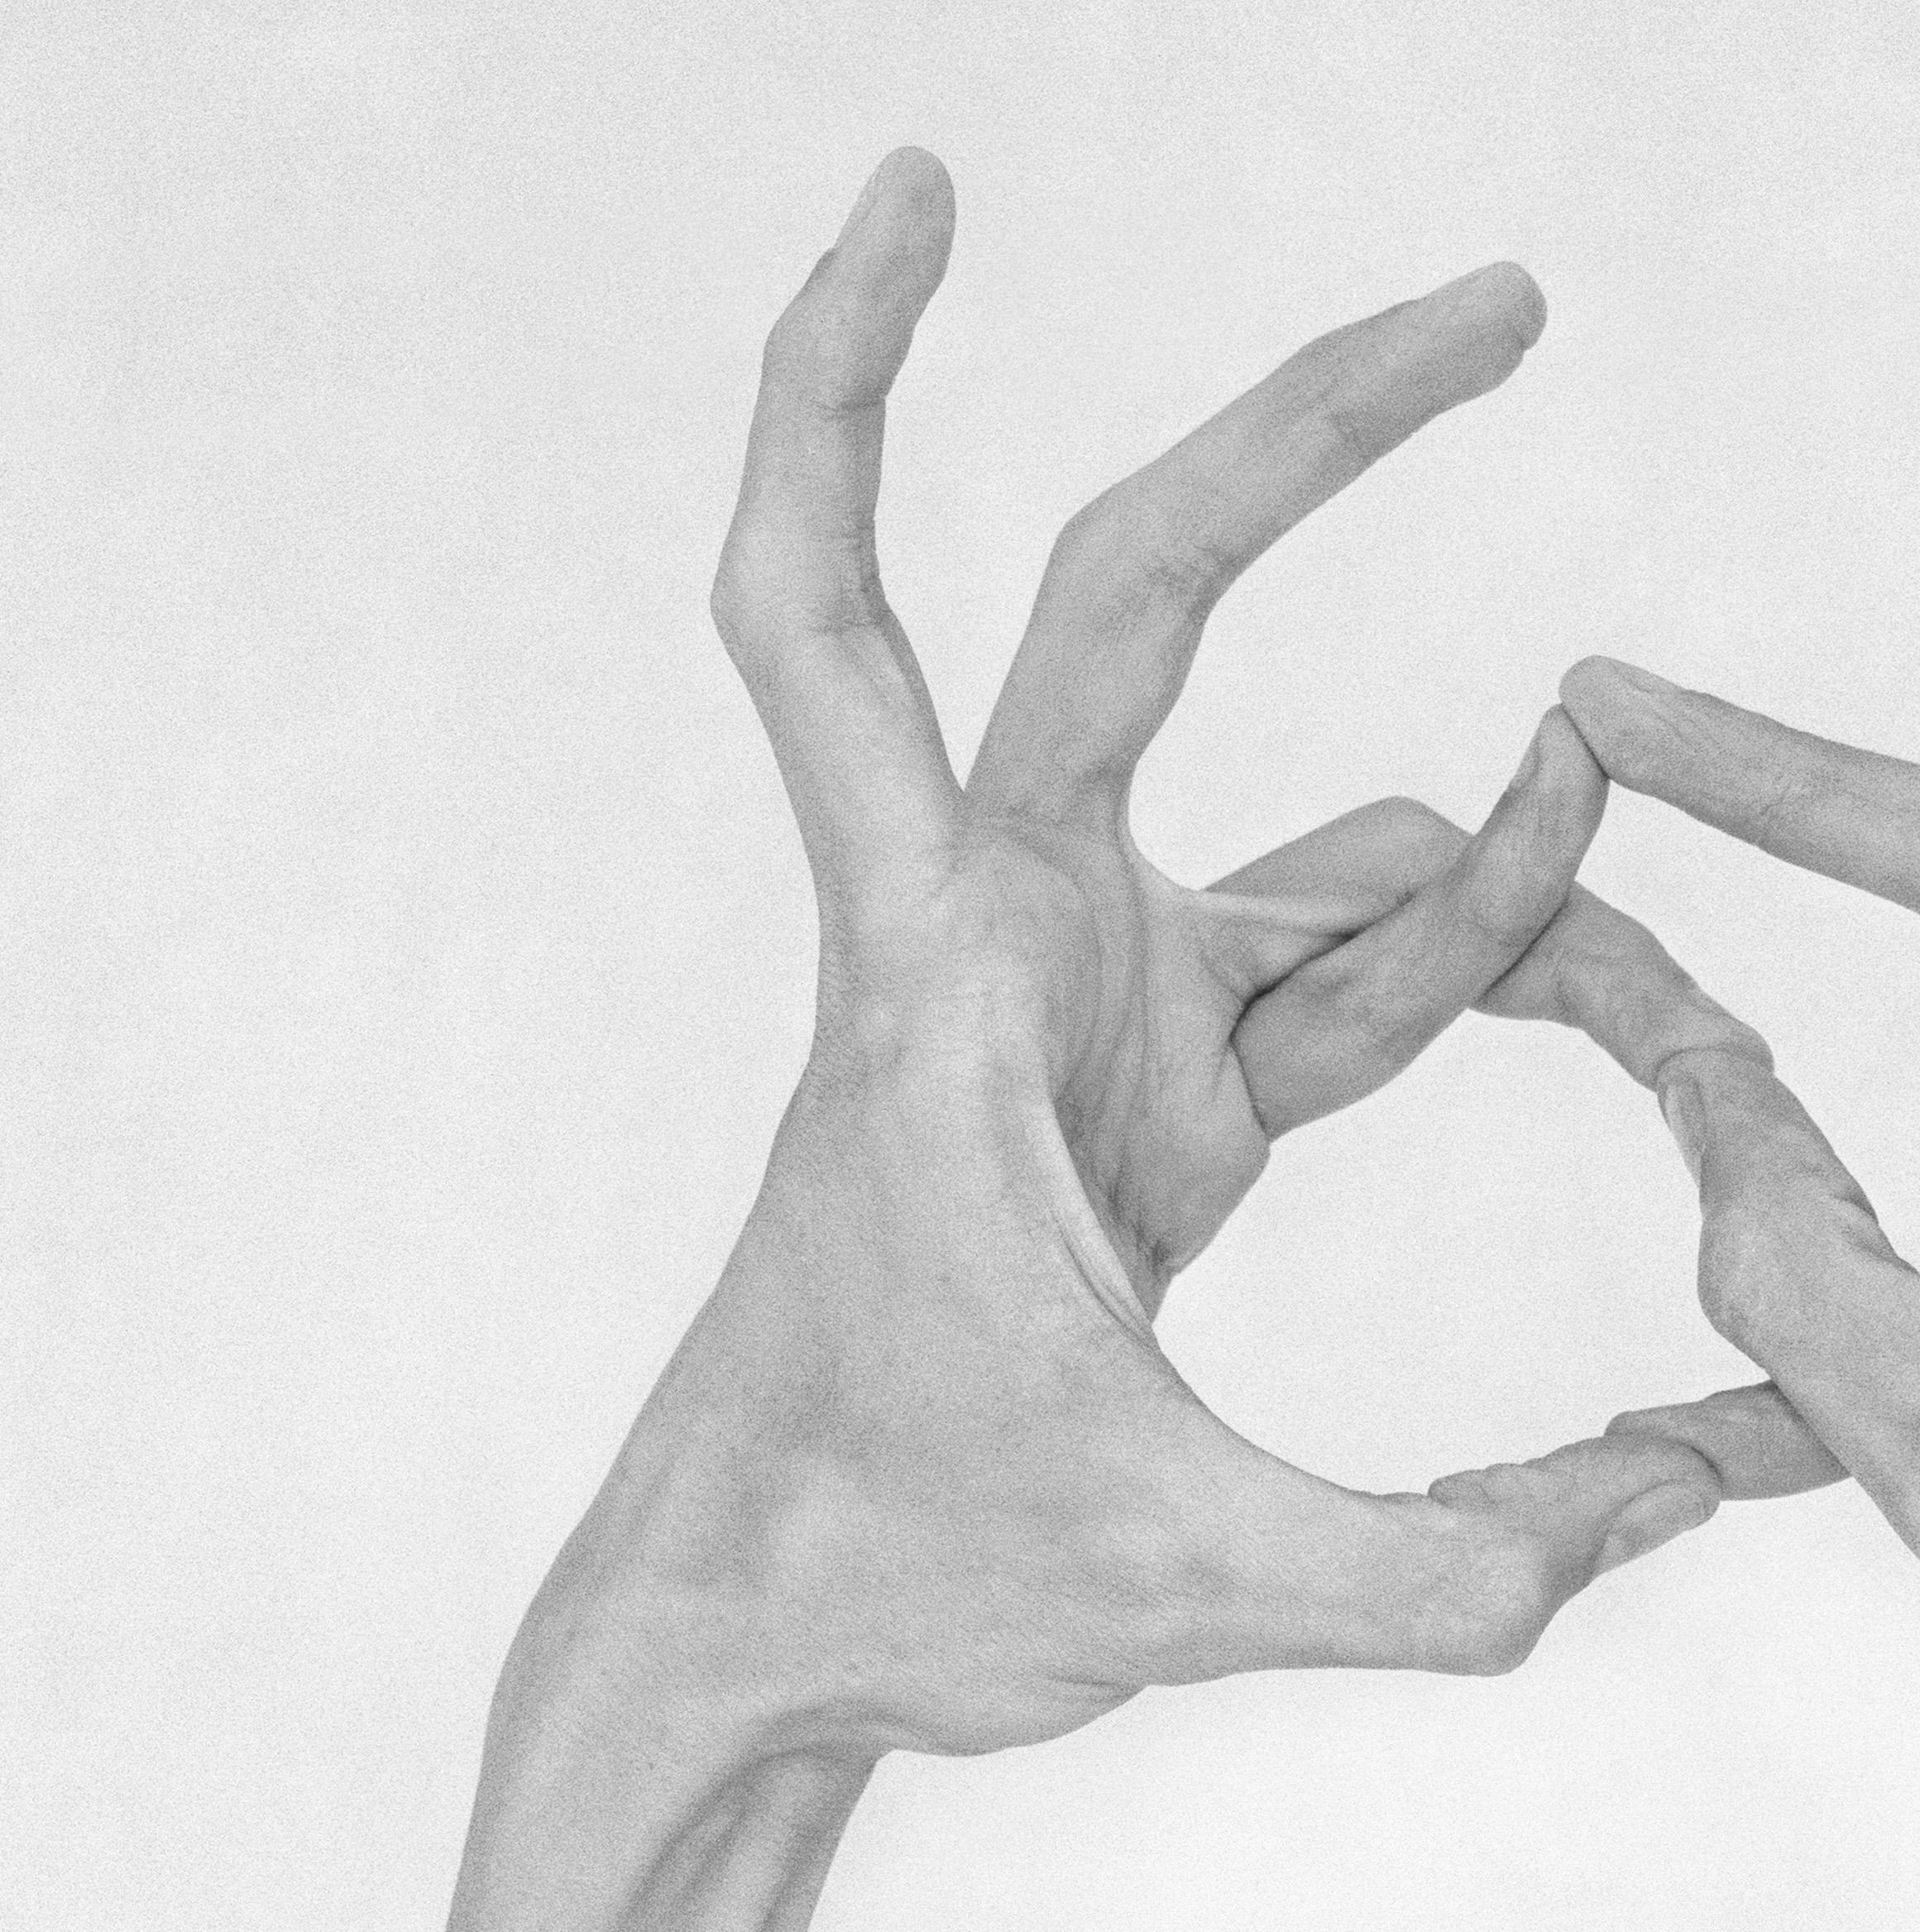 Ohne Titel XXIII. Aus der Serie Chiromorphose. Die Hände. Schwarzweiß-Fotografie (Ästhetizismus), Photograph, von Nico Baixas / Gos-com-fuig